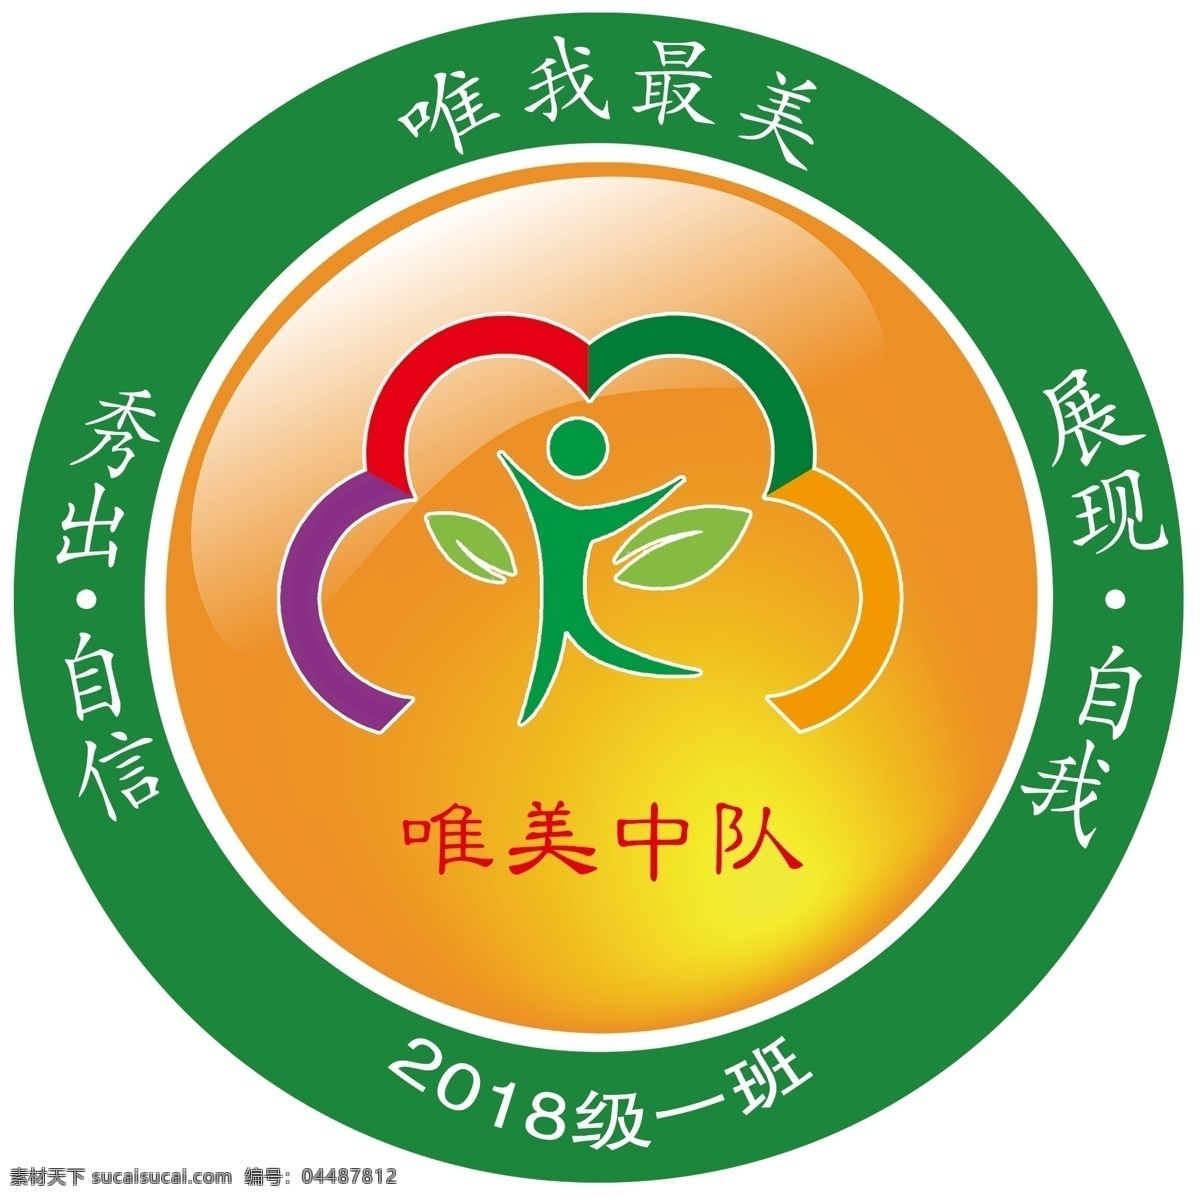 学校logo 班徽 唯美中队 绿色 学校图标 logo设计